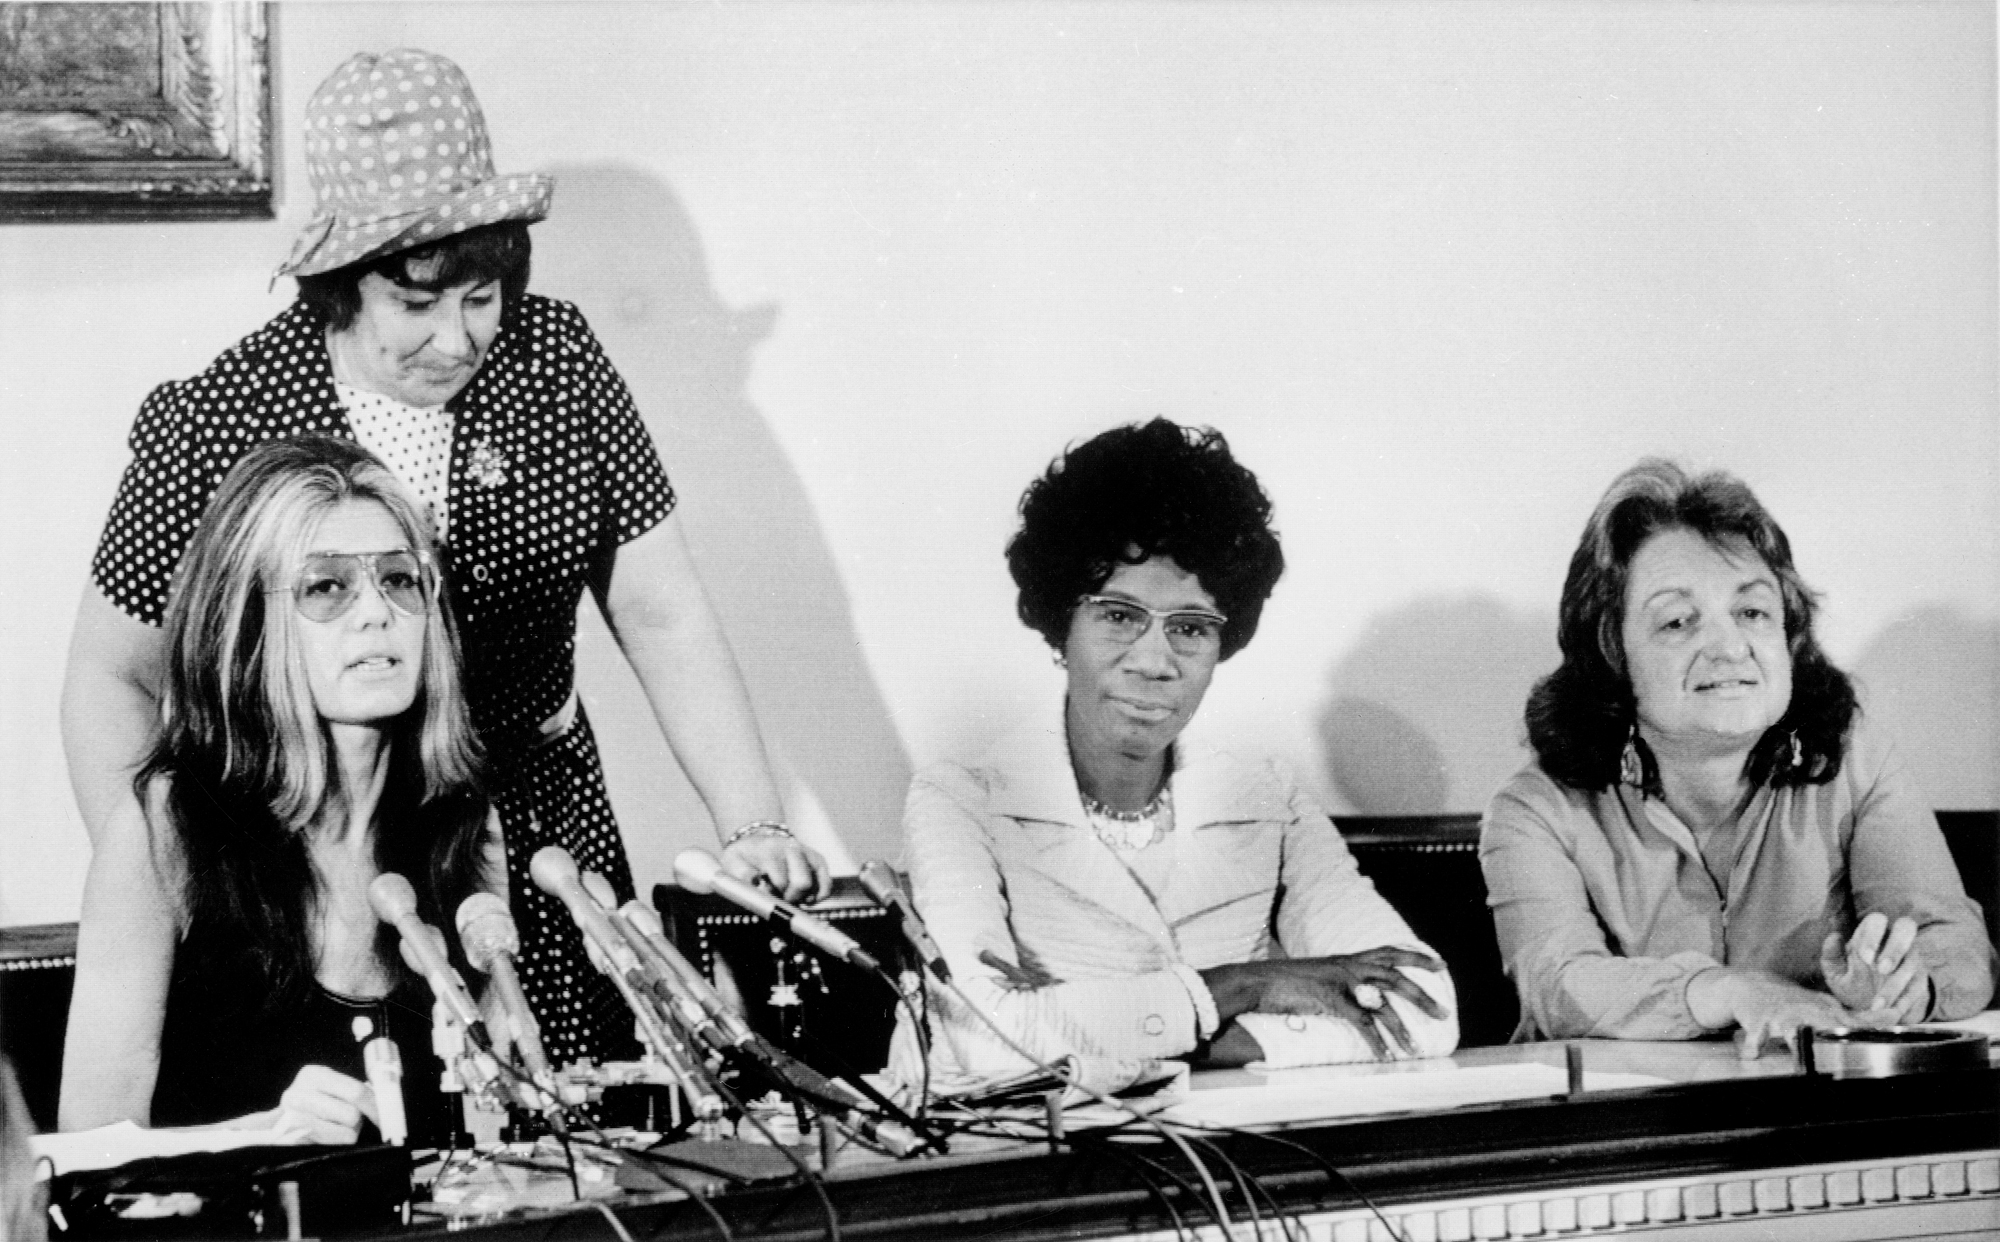 Três mulheres se sentam à mesa, uma com microfones à sua frente, sugerindo que é uma conferência de imprensa